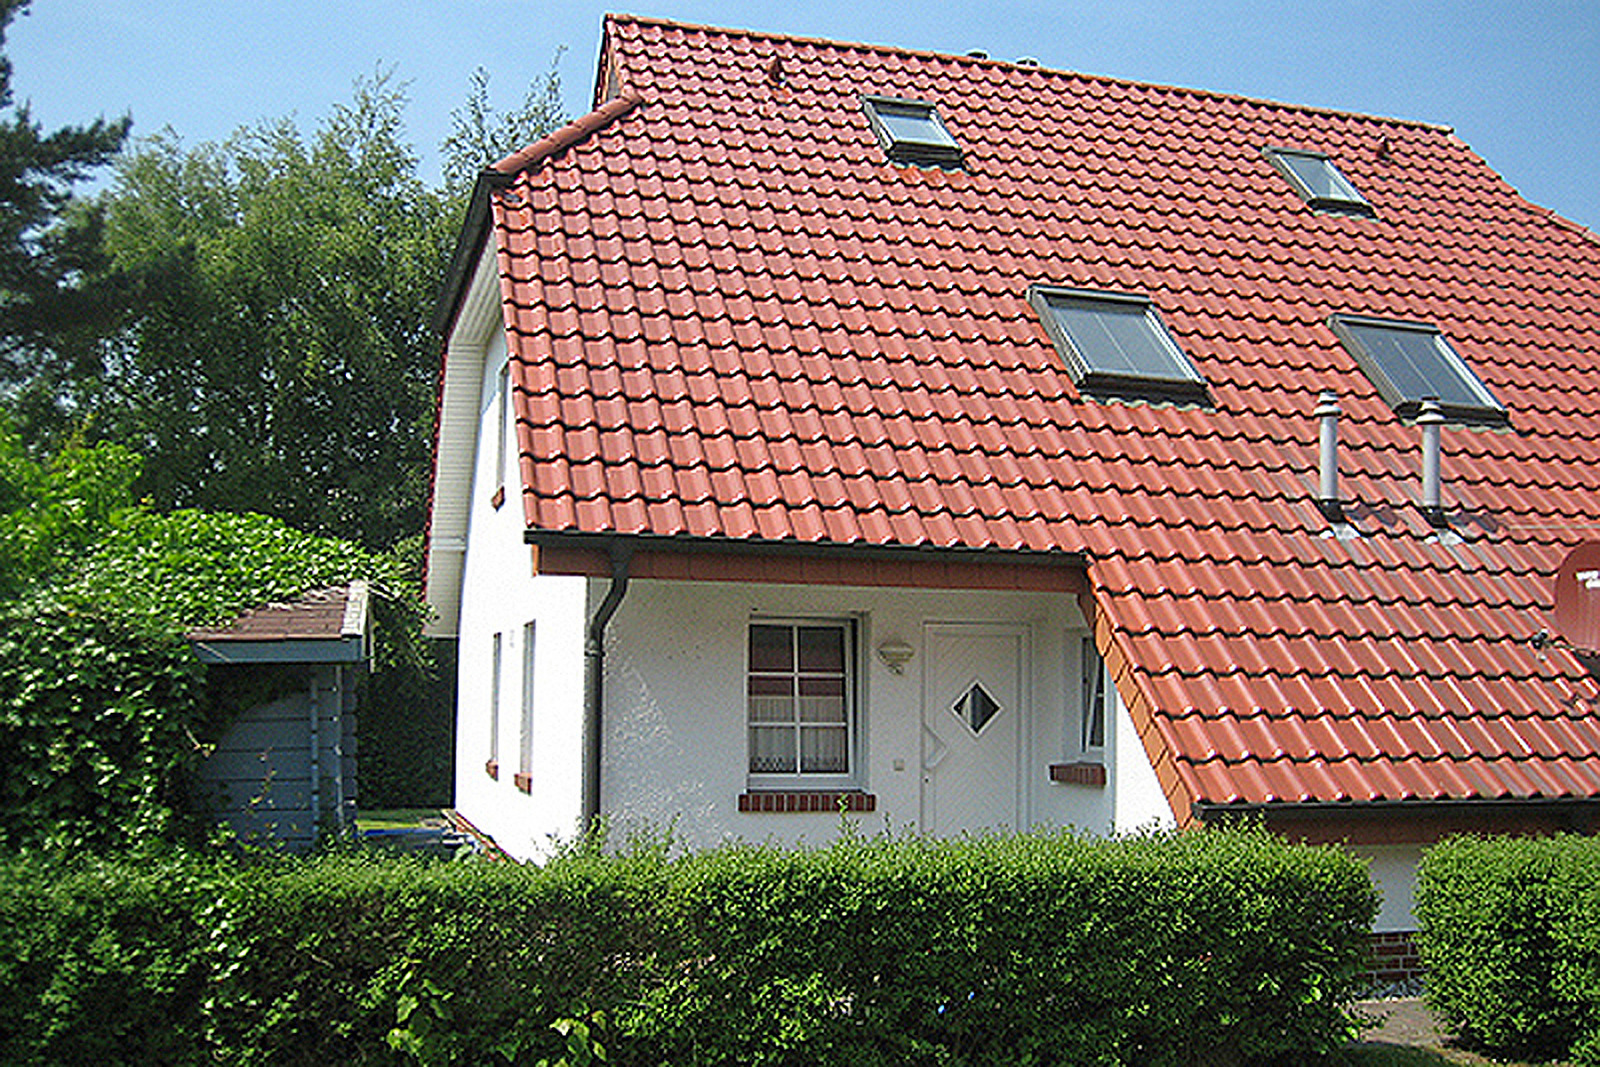 54 Grad Nord Ferienhaus in Deutschland